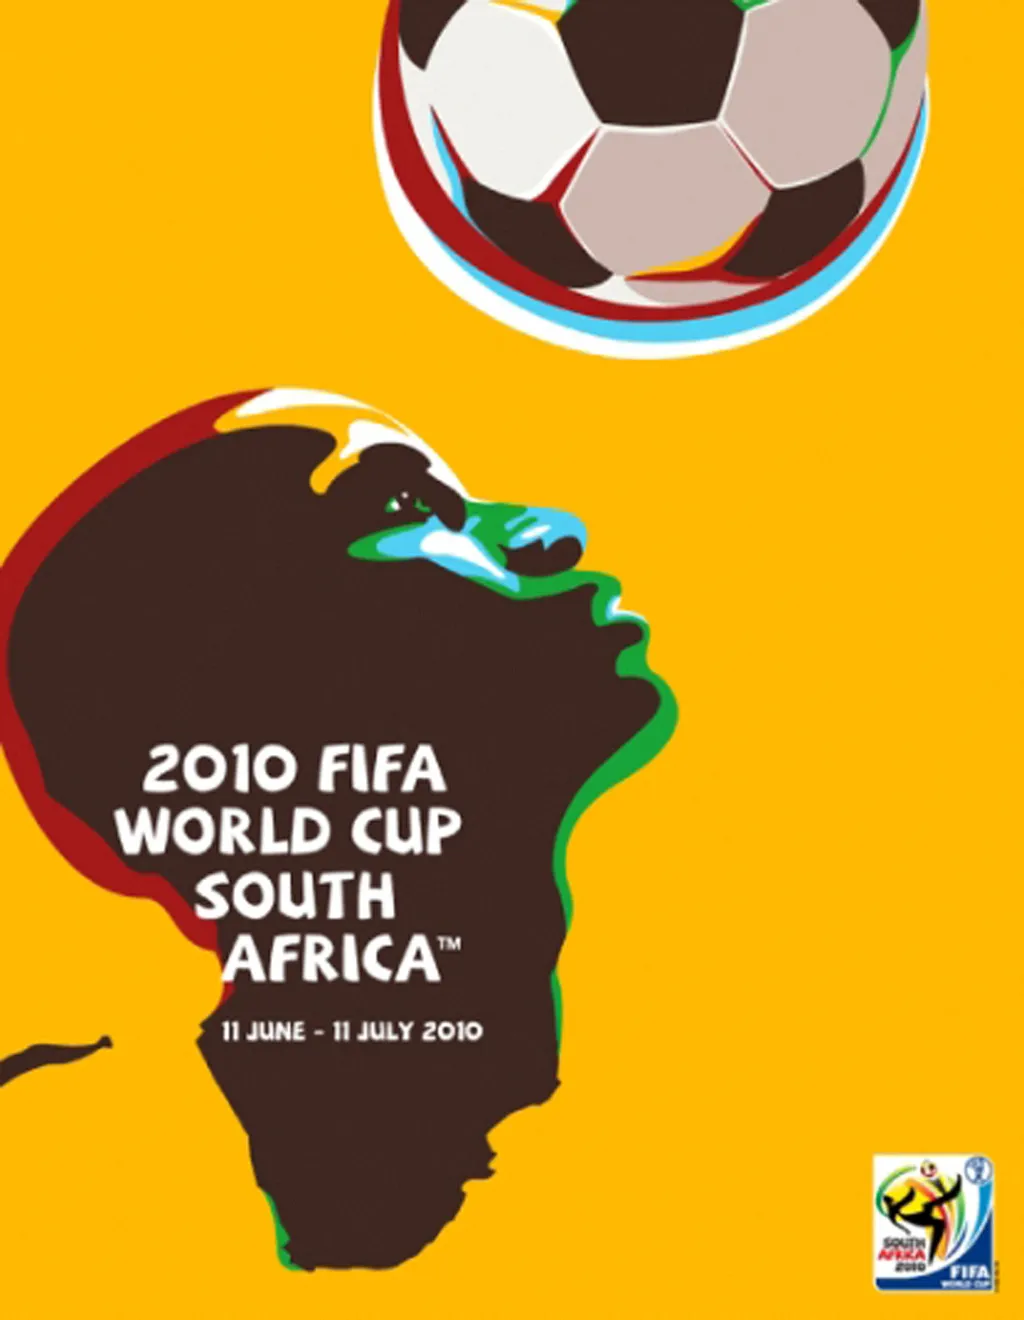 Labdarúgó-világbajnokság, labdarúgóvébé, futballvébé, labdarúgás, hivatalos plakát, poszter, 2010, Dél-afrikai Köztársaság 